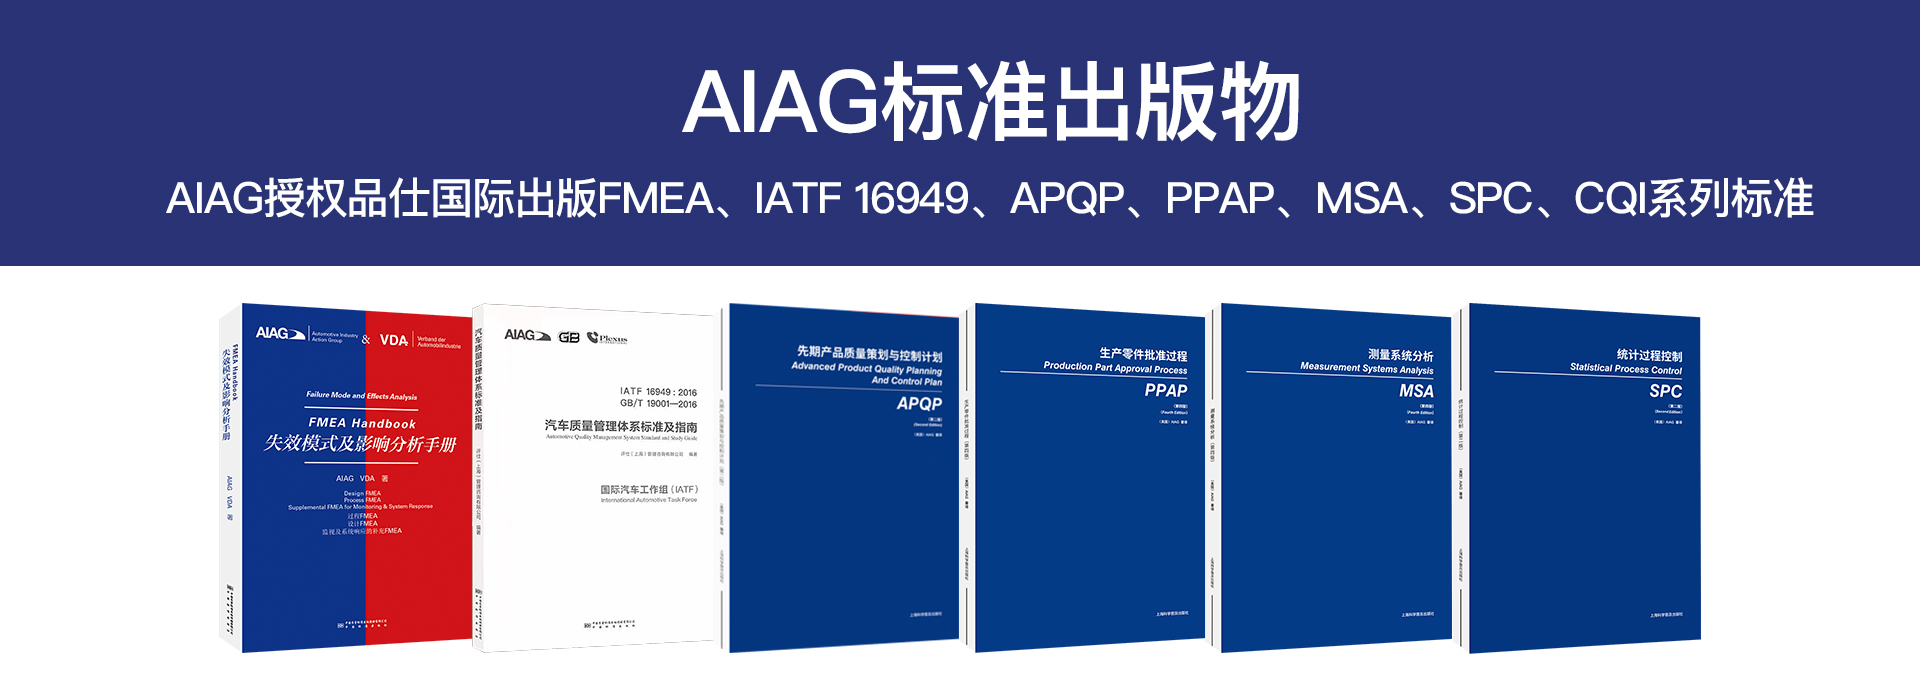 AIAG-标准出版物